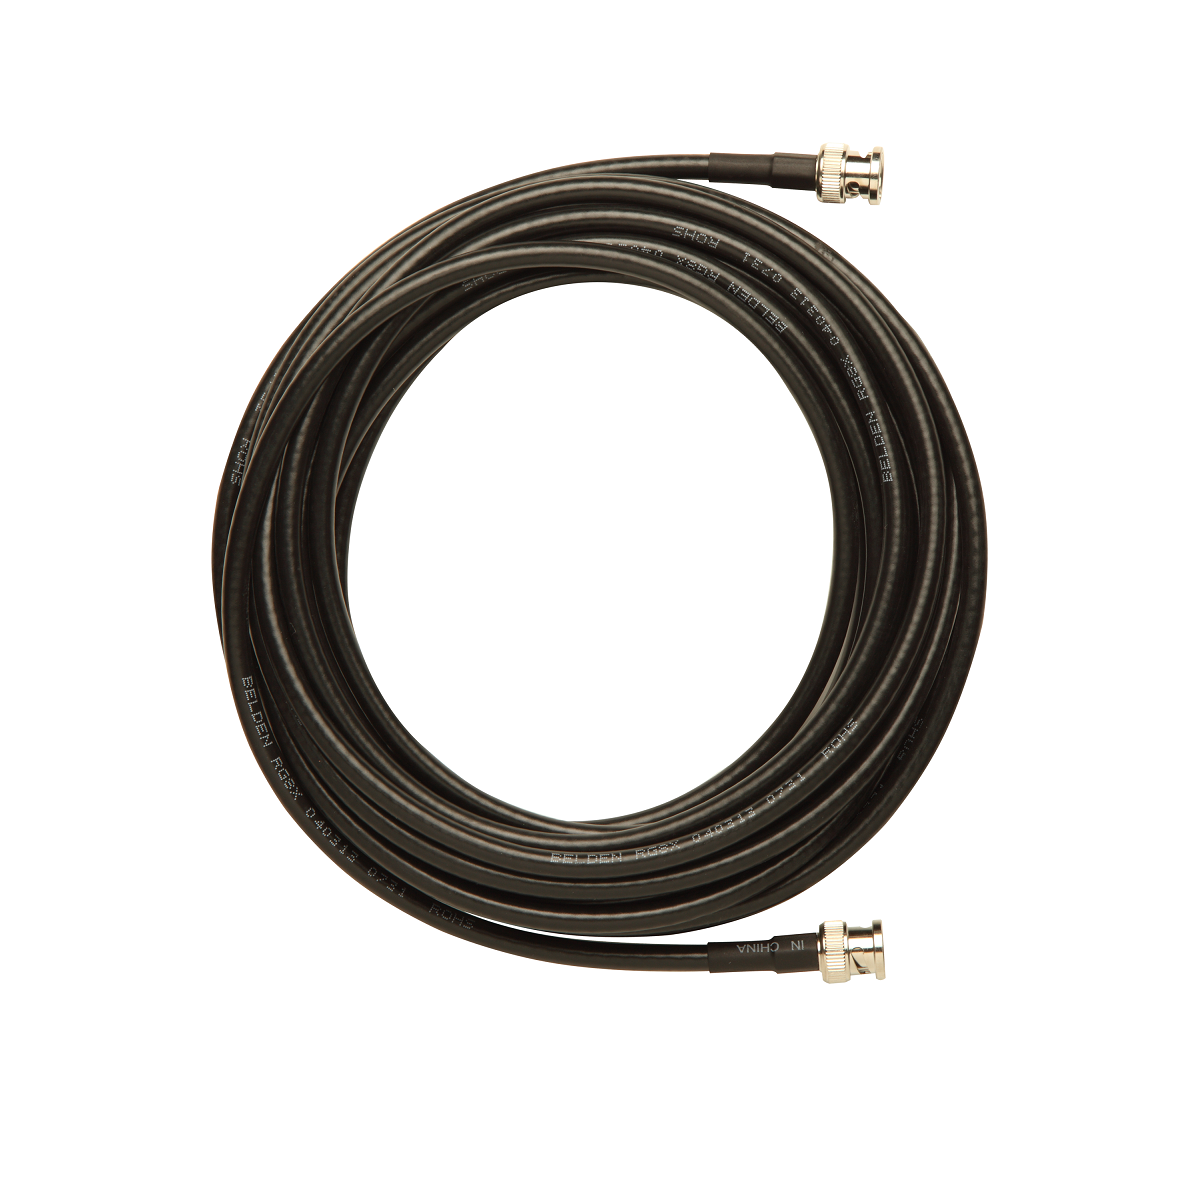 Cable coaxial de BNC a BNC, de 7,6.